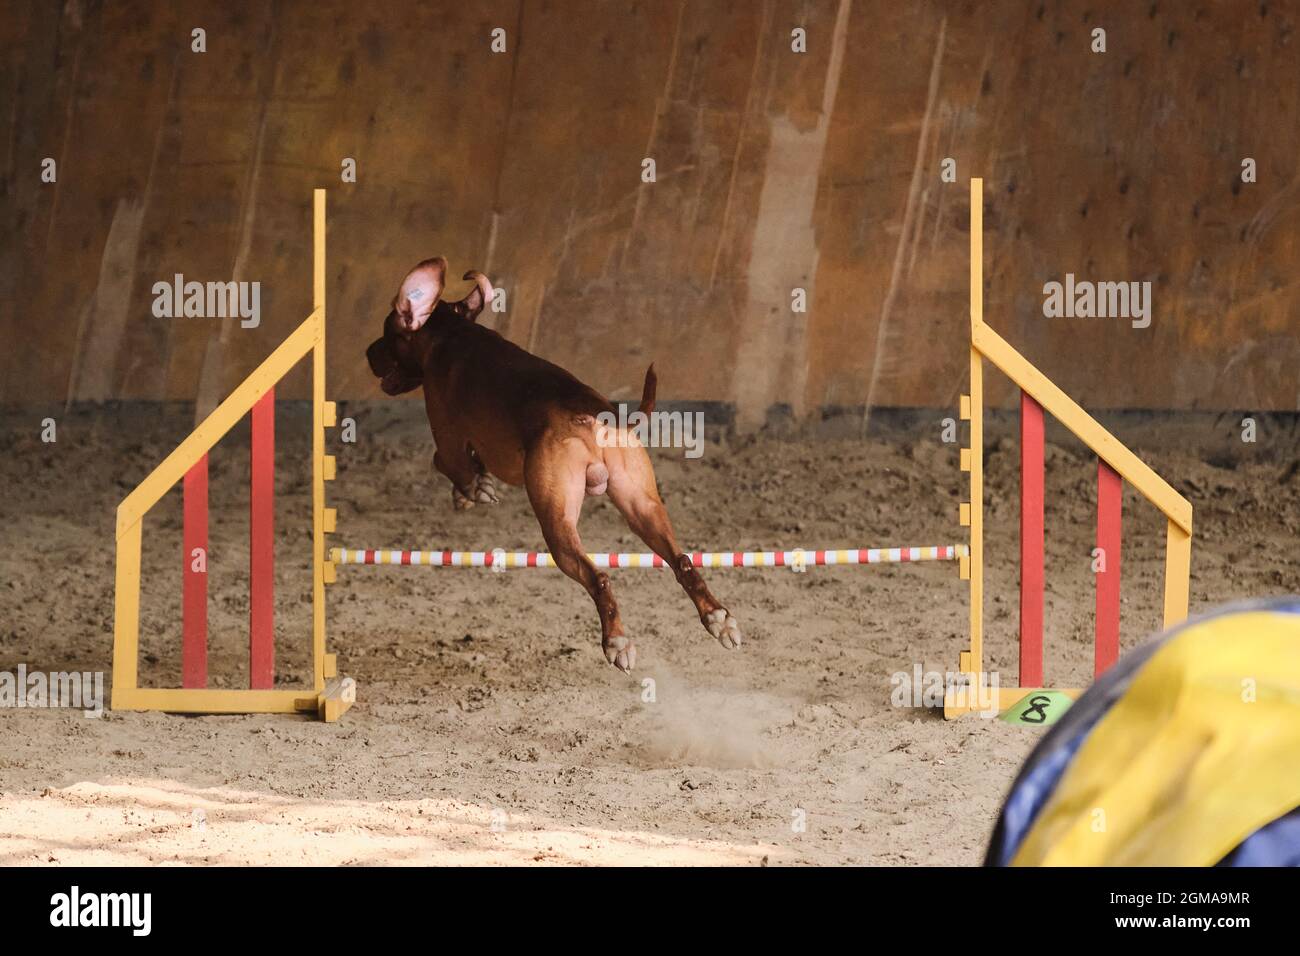 Geschwindigkeit und Beweglichkeit, Sport mit Hund. Die rothaarige  ungarische vizsla läuft schnell und springt bei Agility-Wettbewerben hoch  über die Barriere Stockfotografie - Alamy